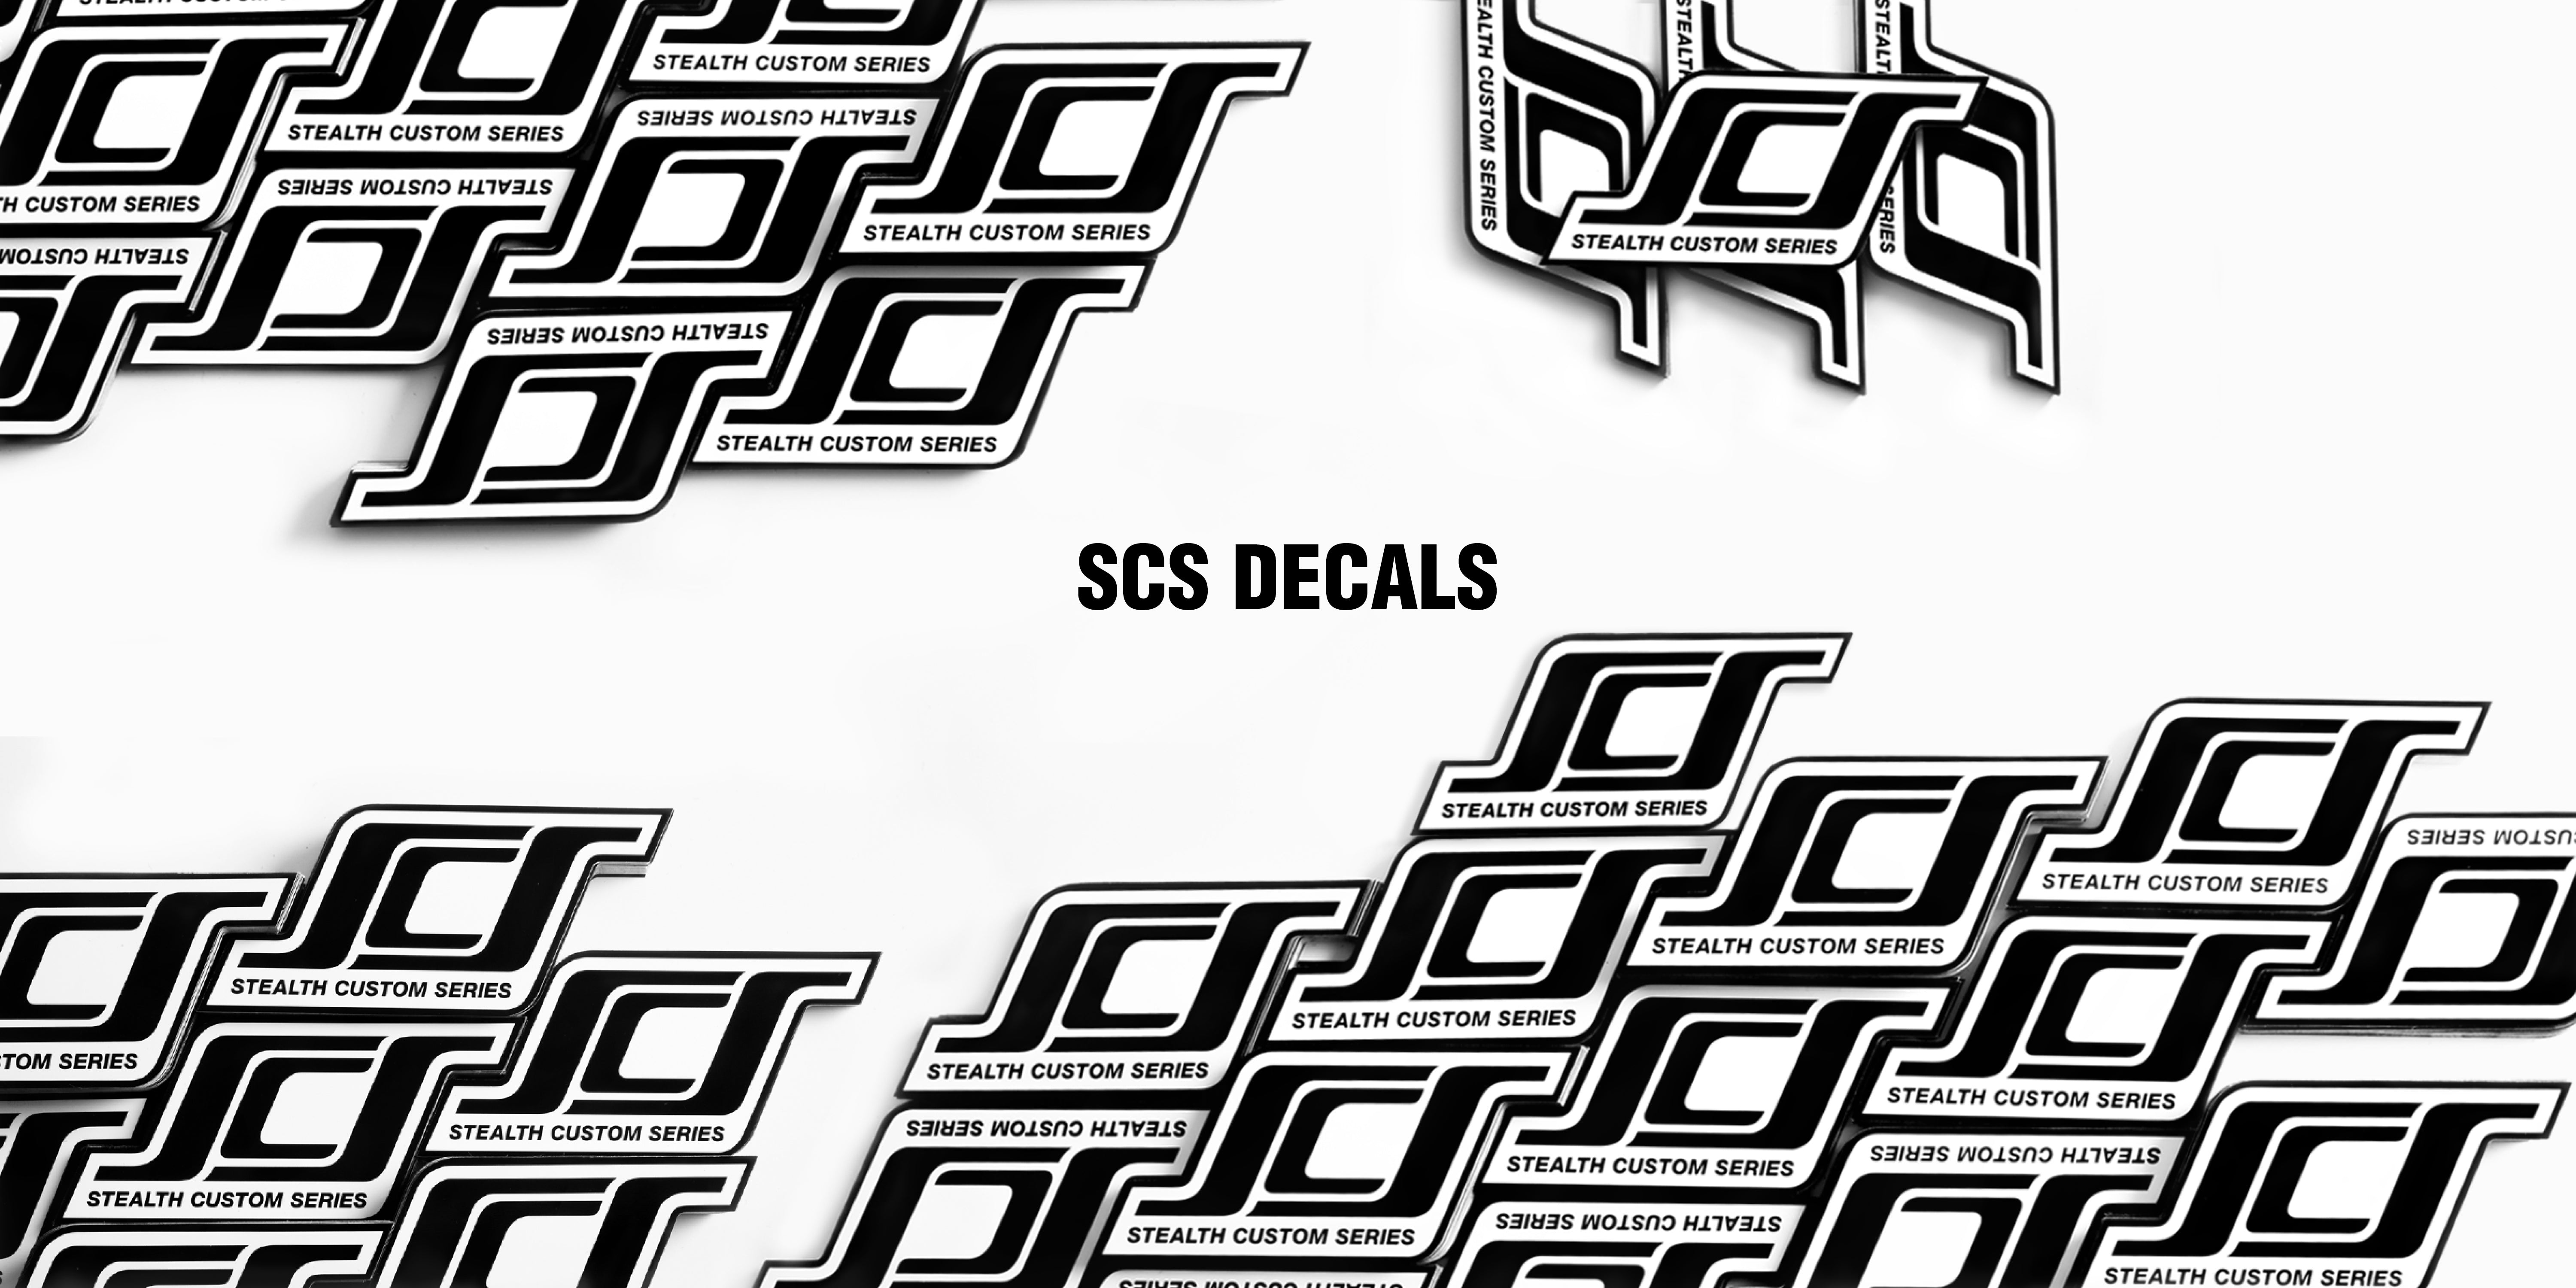 SCS Decals